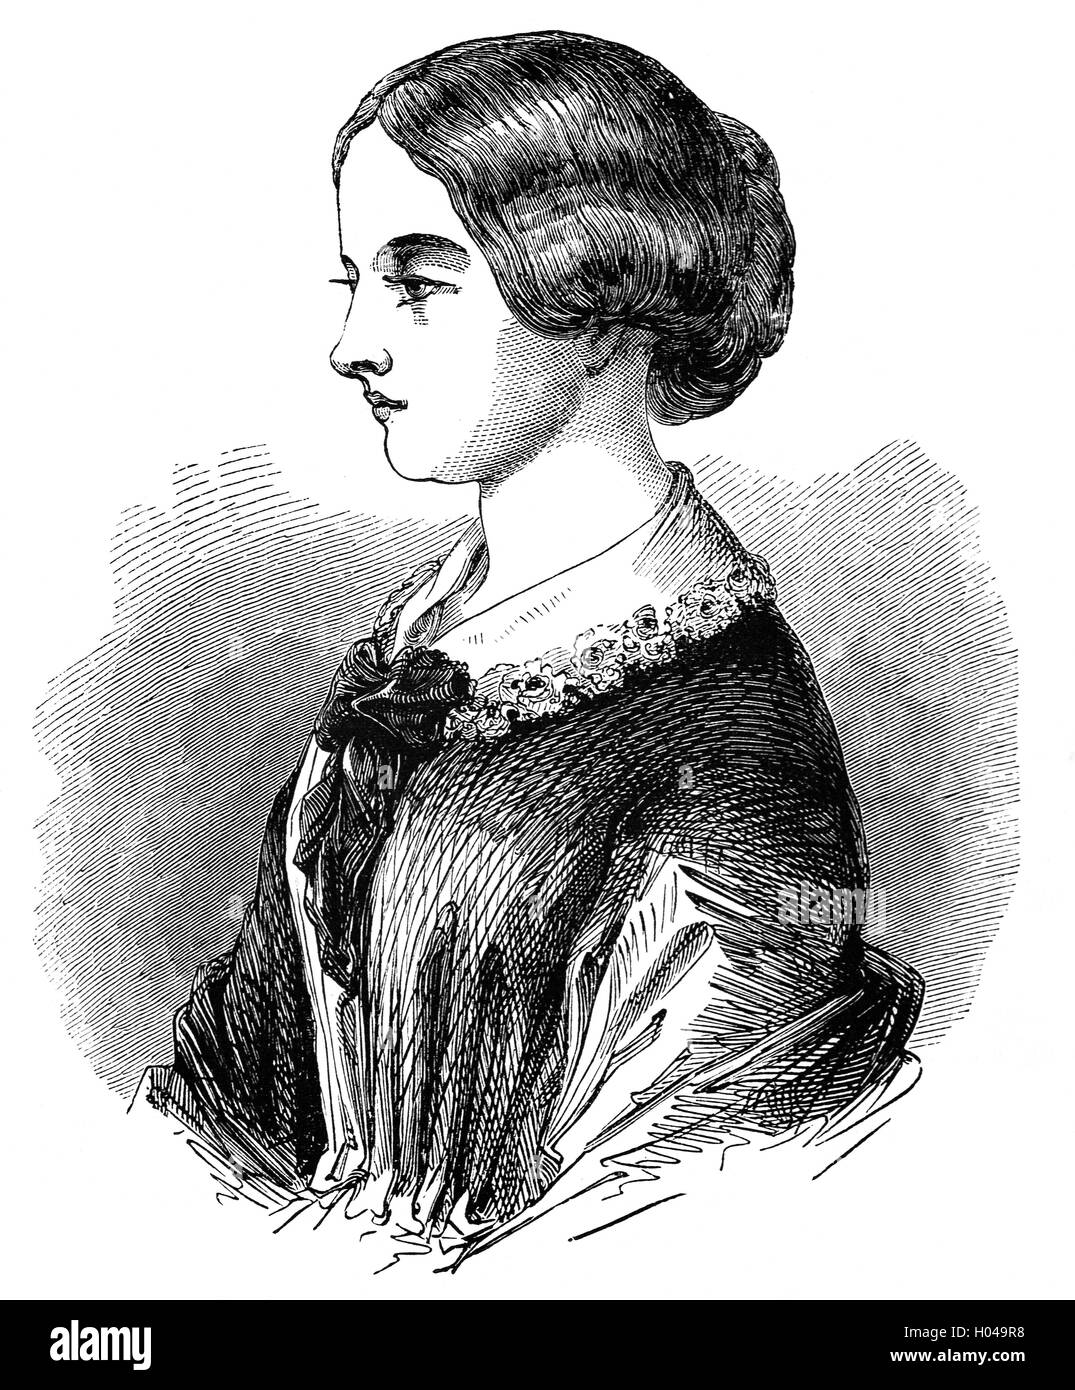 Florence Nightingale (1820 - 1910) était un célèbre réformateur social anglais et le fondateur des soins infirmiers modernes, qui s'est fait connaître en tant que manager d'infirmières préparées par elle pendant la guerre de Crimée, où elle a organisé la tendance à des soldats blessés. Elle a donné l'allaitement d'un très bonne réputation et est devenu une icône de la culture de l'époque victorienne, en particulier dans le personnage de "La dame à la Lampe" les rondes des soldats blessés pendant la nuit. Banque D'Images